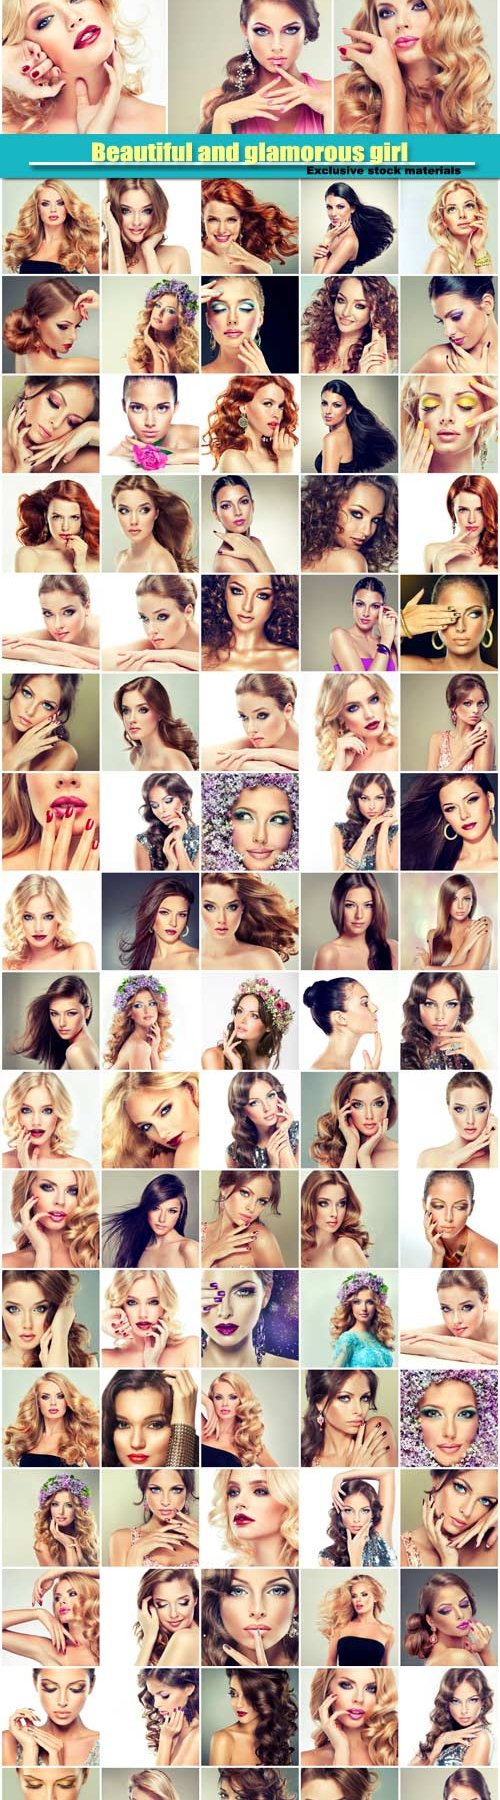 Beautiful girls, trendy, stylish and glamorous women